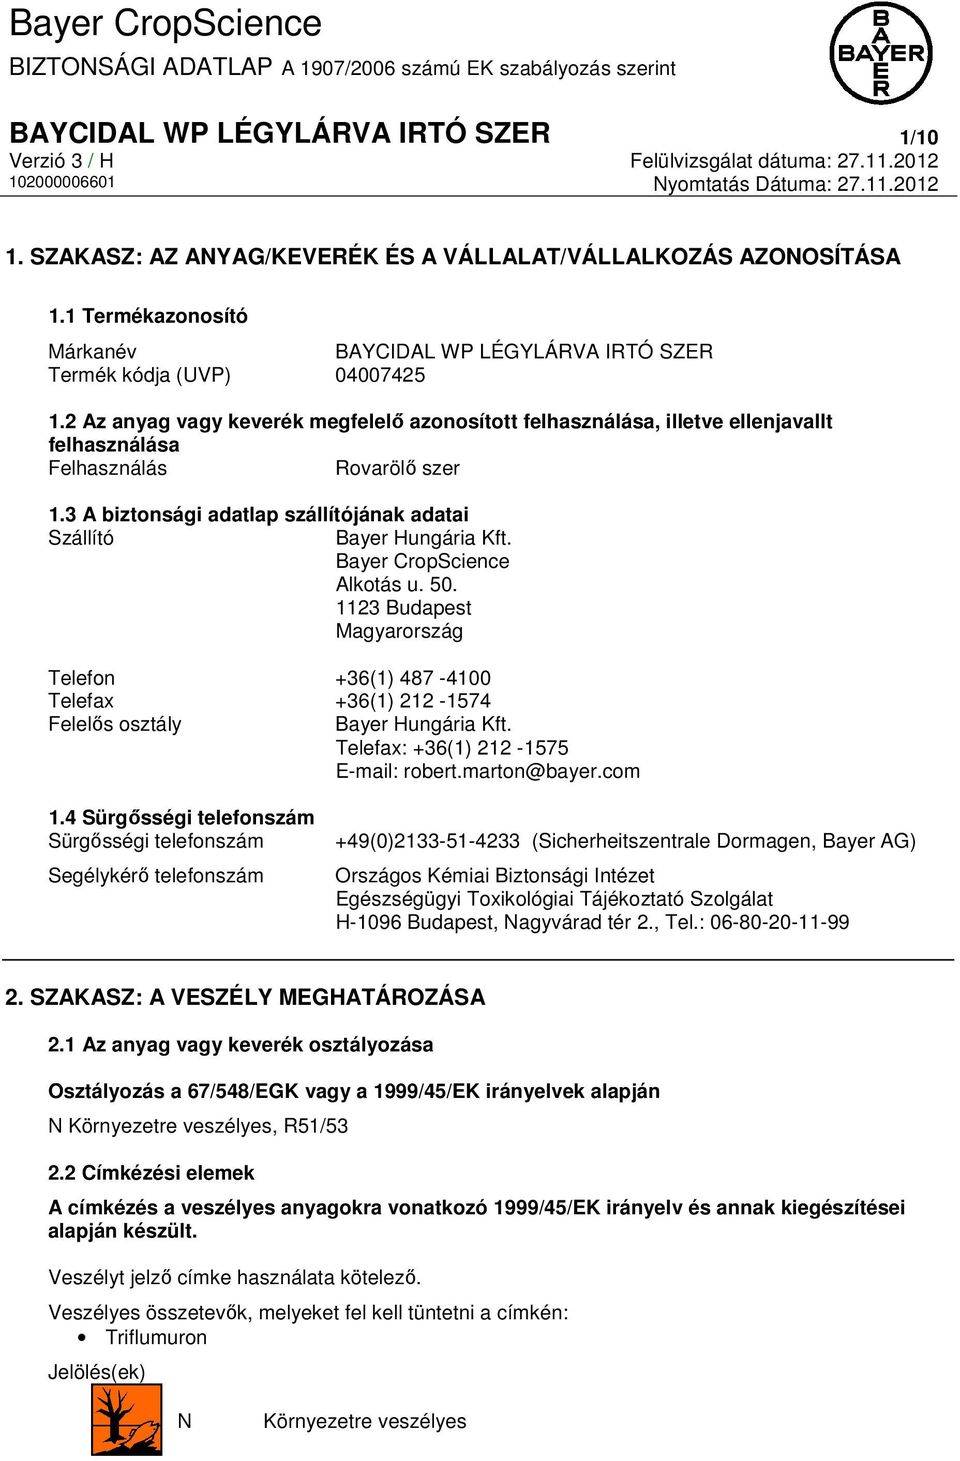 Bayer CropScience Alkotás u. 50. 1123 Budapest Magyarország Telefon +36(1) 487-4100 Telefax +36(1) 212-1574 Felelős osztály Bayer Hungária Kft. Telefax: +36(1) 212-1575 E-mail: robert.marton@bayer.